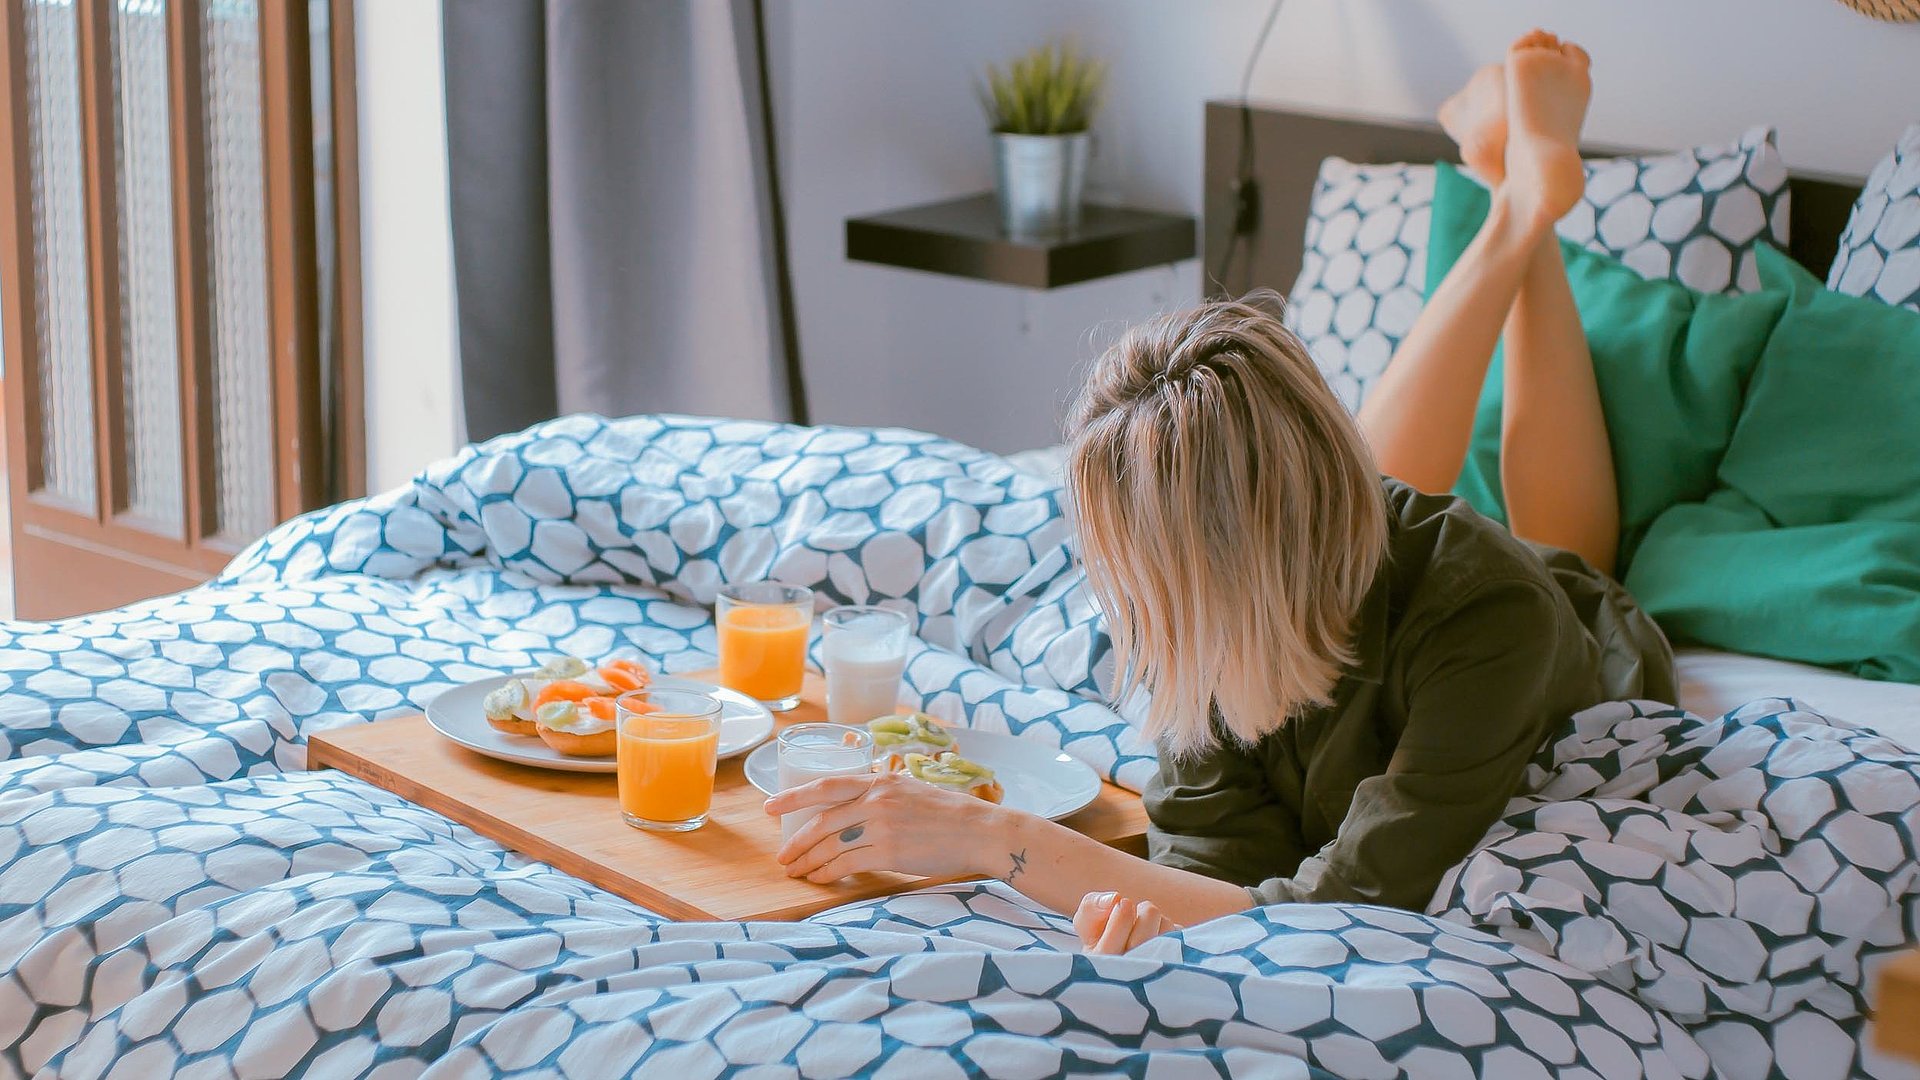 Ferienwohnungen und Appartements für Gruppen in Oberfranken -  junge blonde Frau liegt im Bett neben einer Frühstücksplatte, gefüllt mit O-Saft, Milch und belegten Brötchen